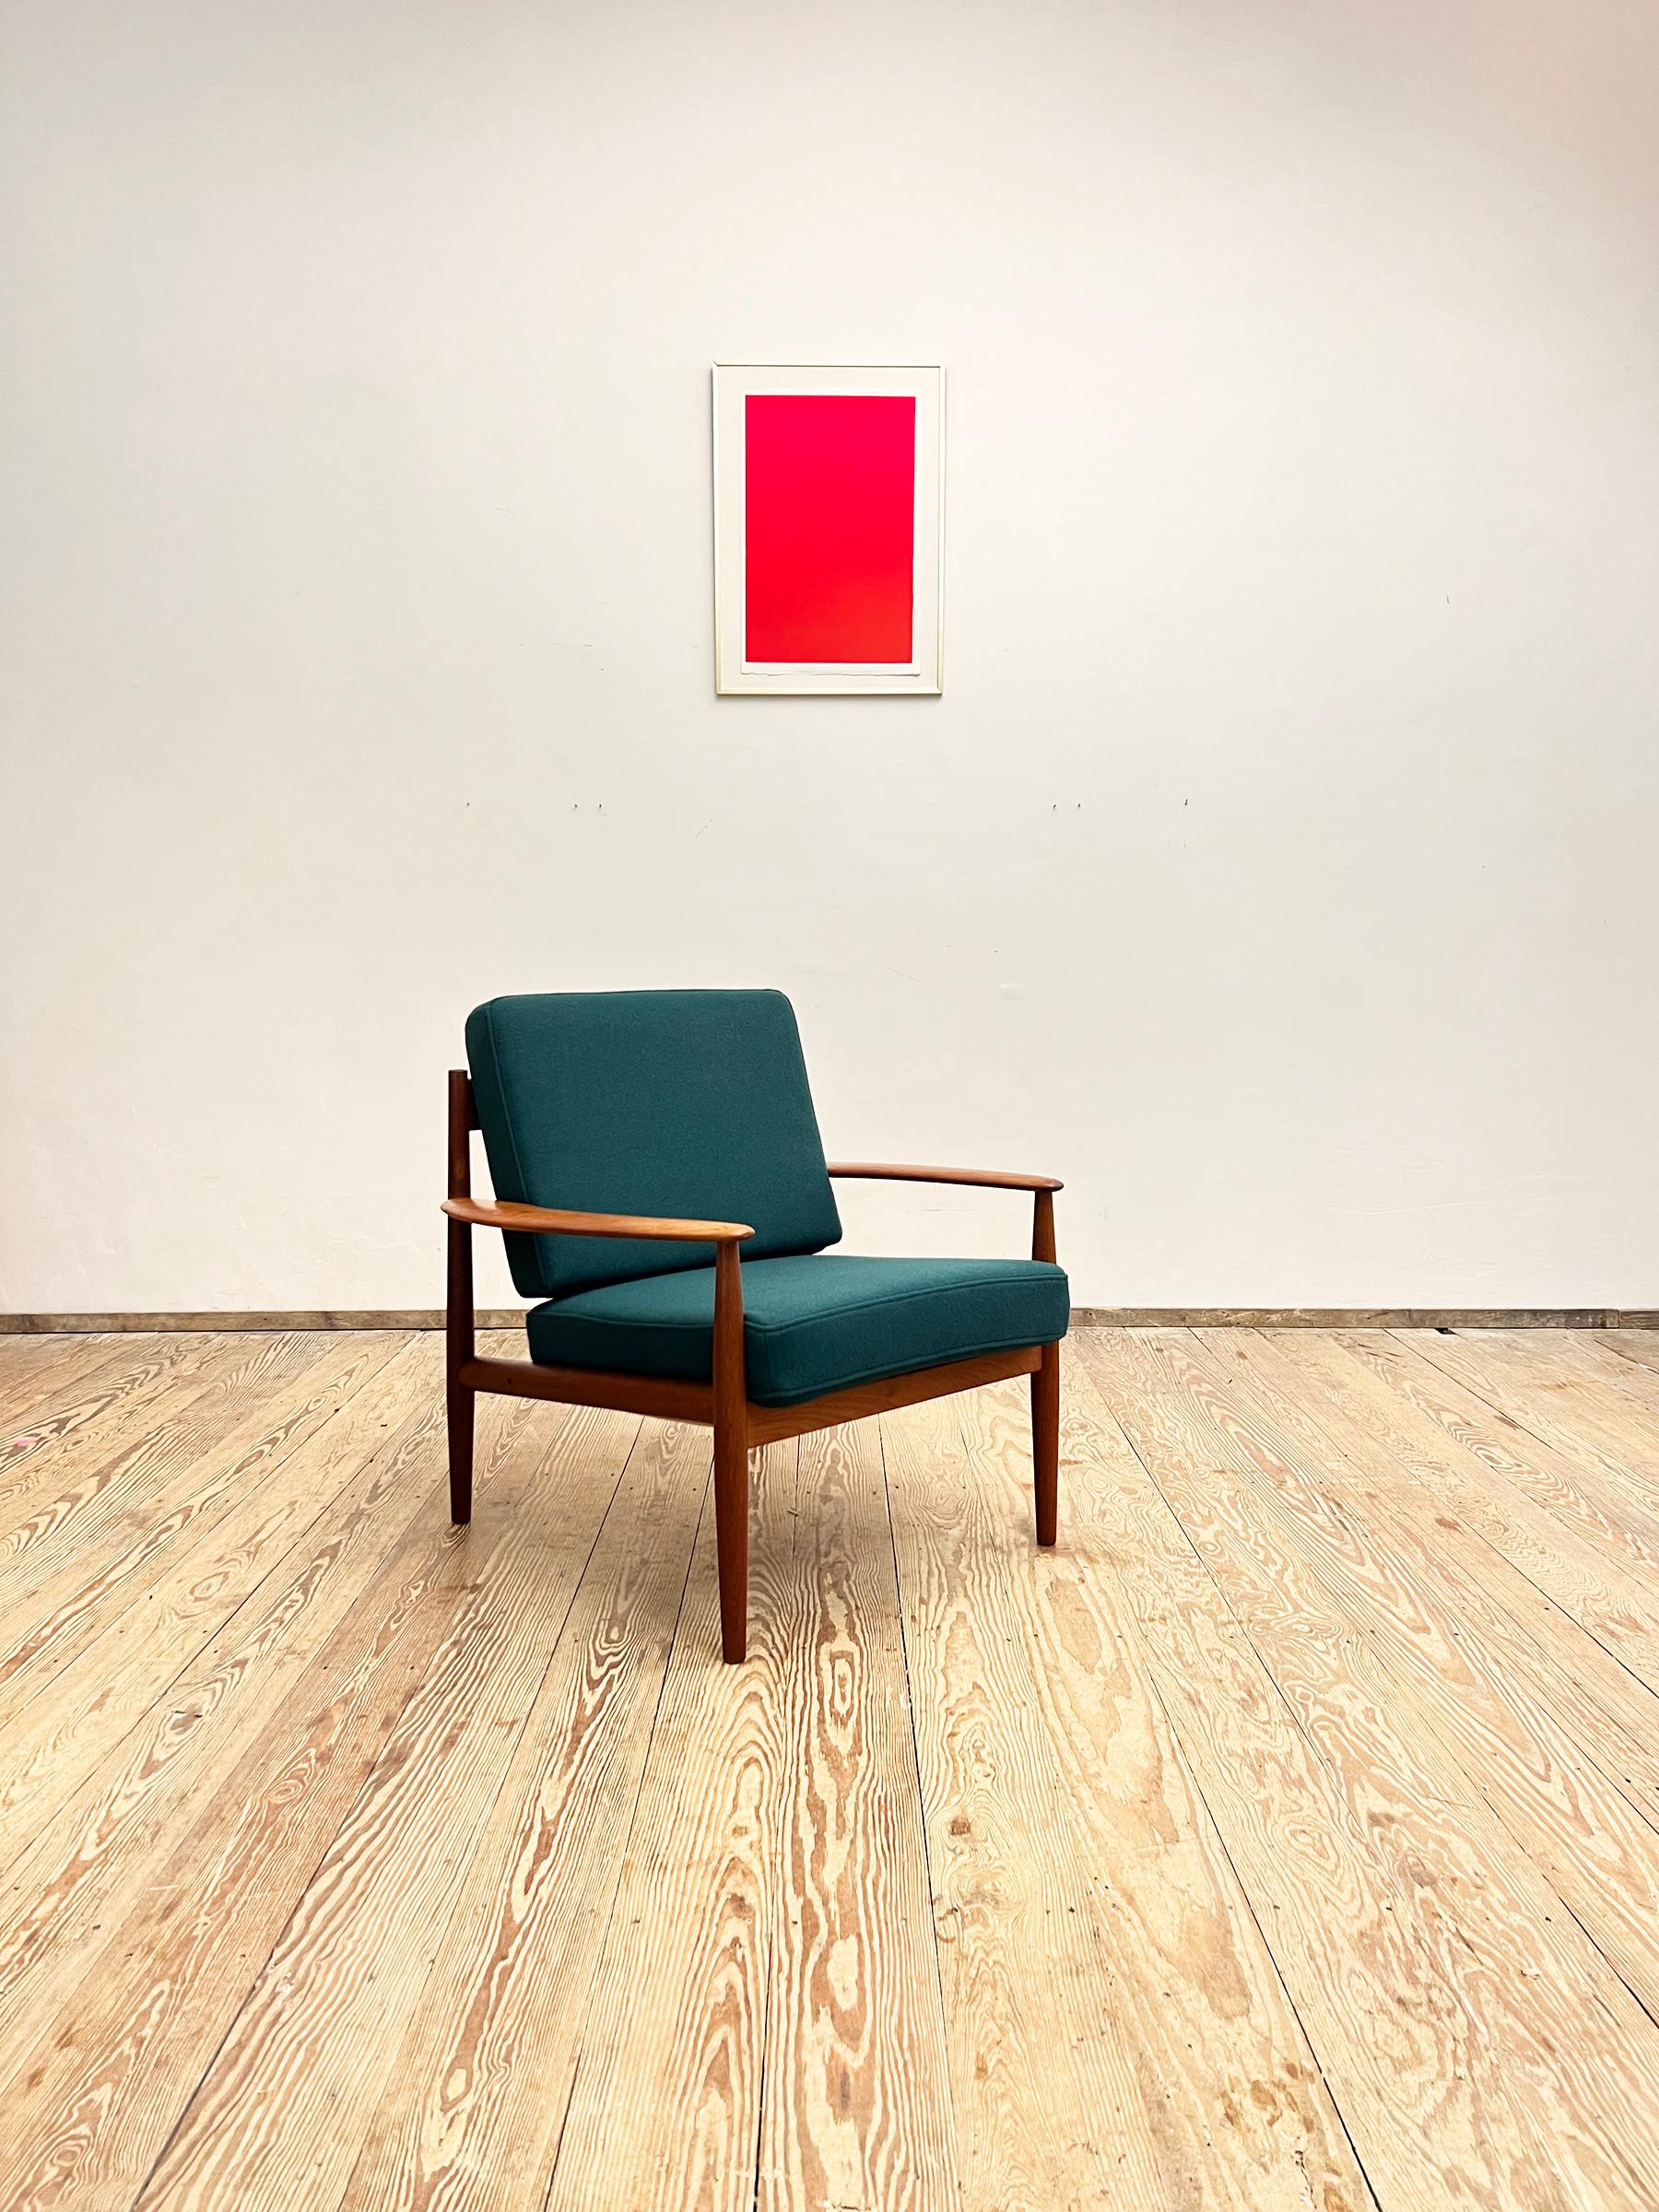 Dimensions : 73 x 75 x 77 cm (Largeur x Hauteur x Profondeur)

Cette magnifique chaise longue a été conçue par Grete Jalk pour France and Son dans les années 1950 au Danemark. La forme élégante et les proportions fragiles font de ce fauteuil l'un